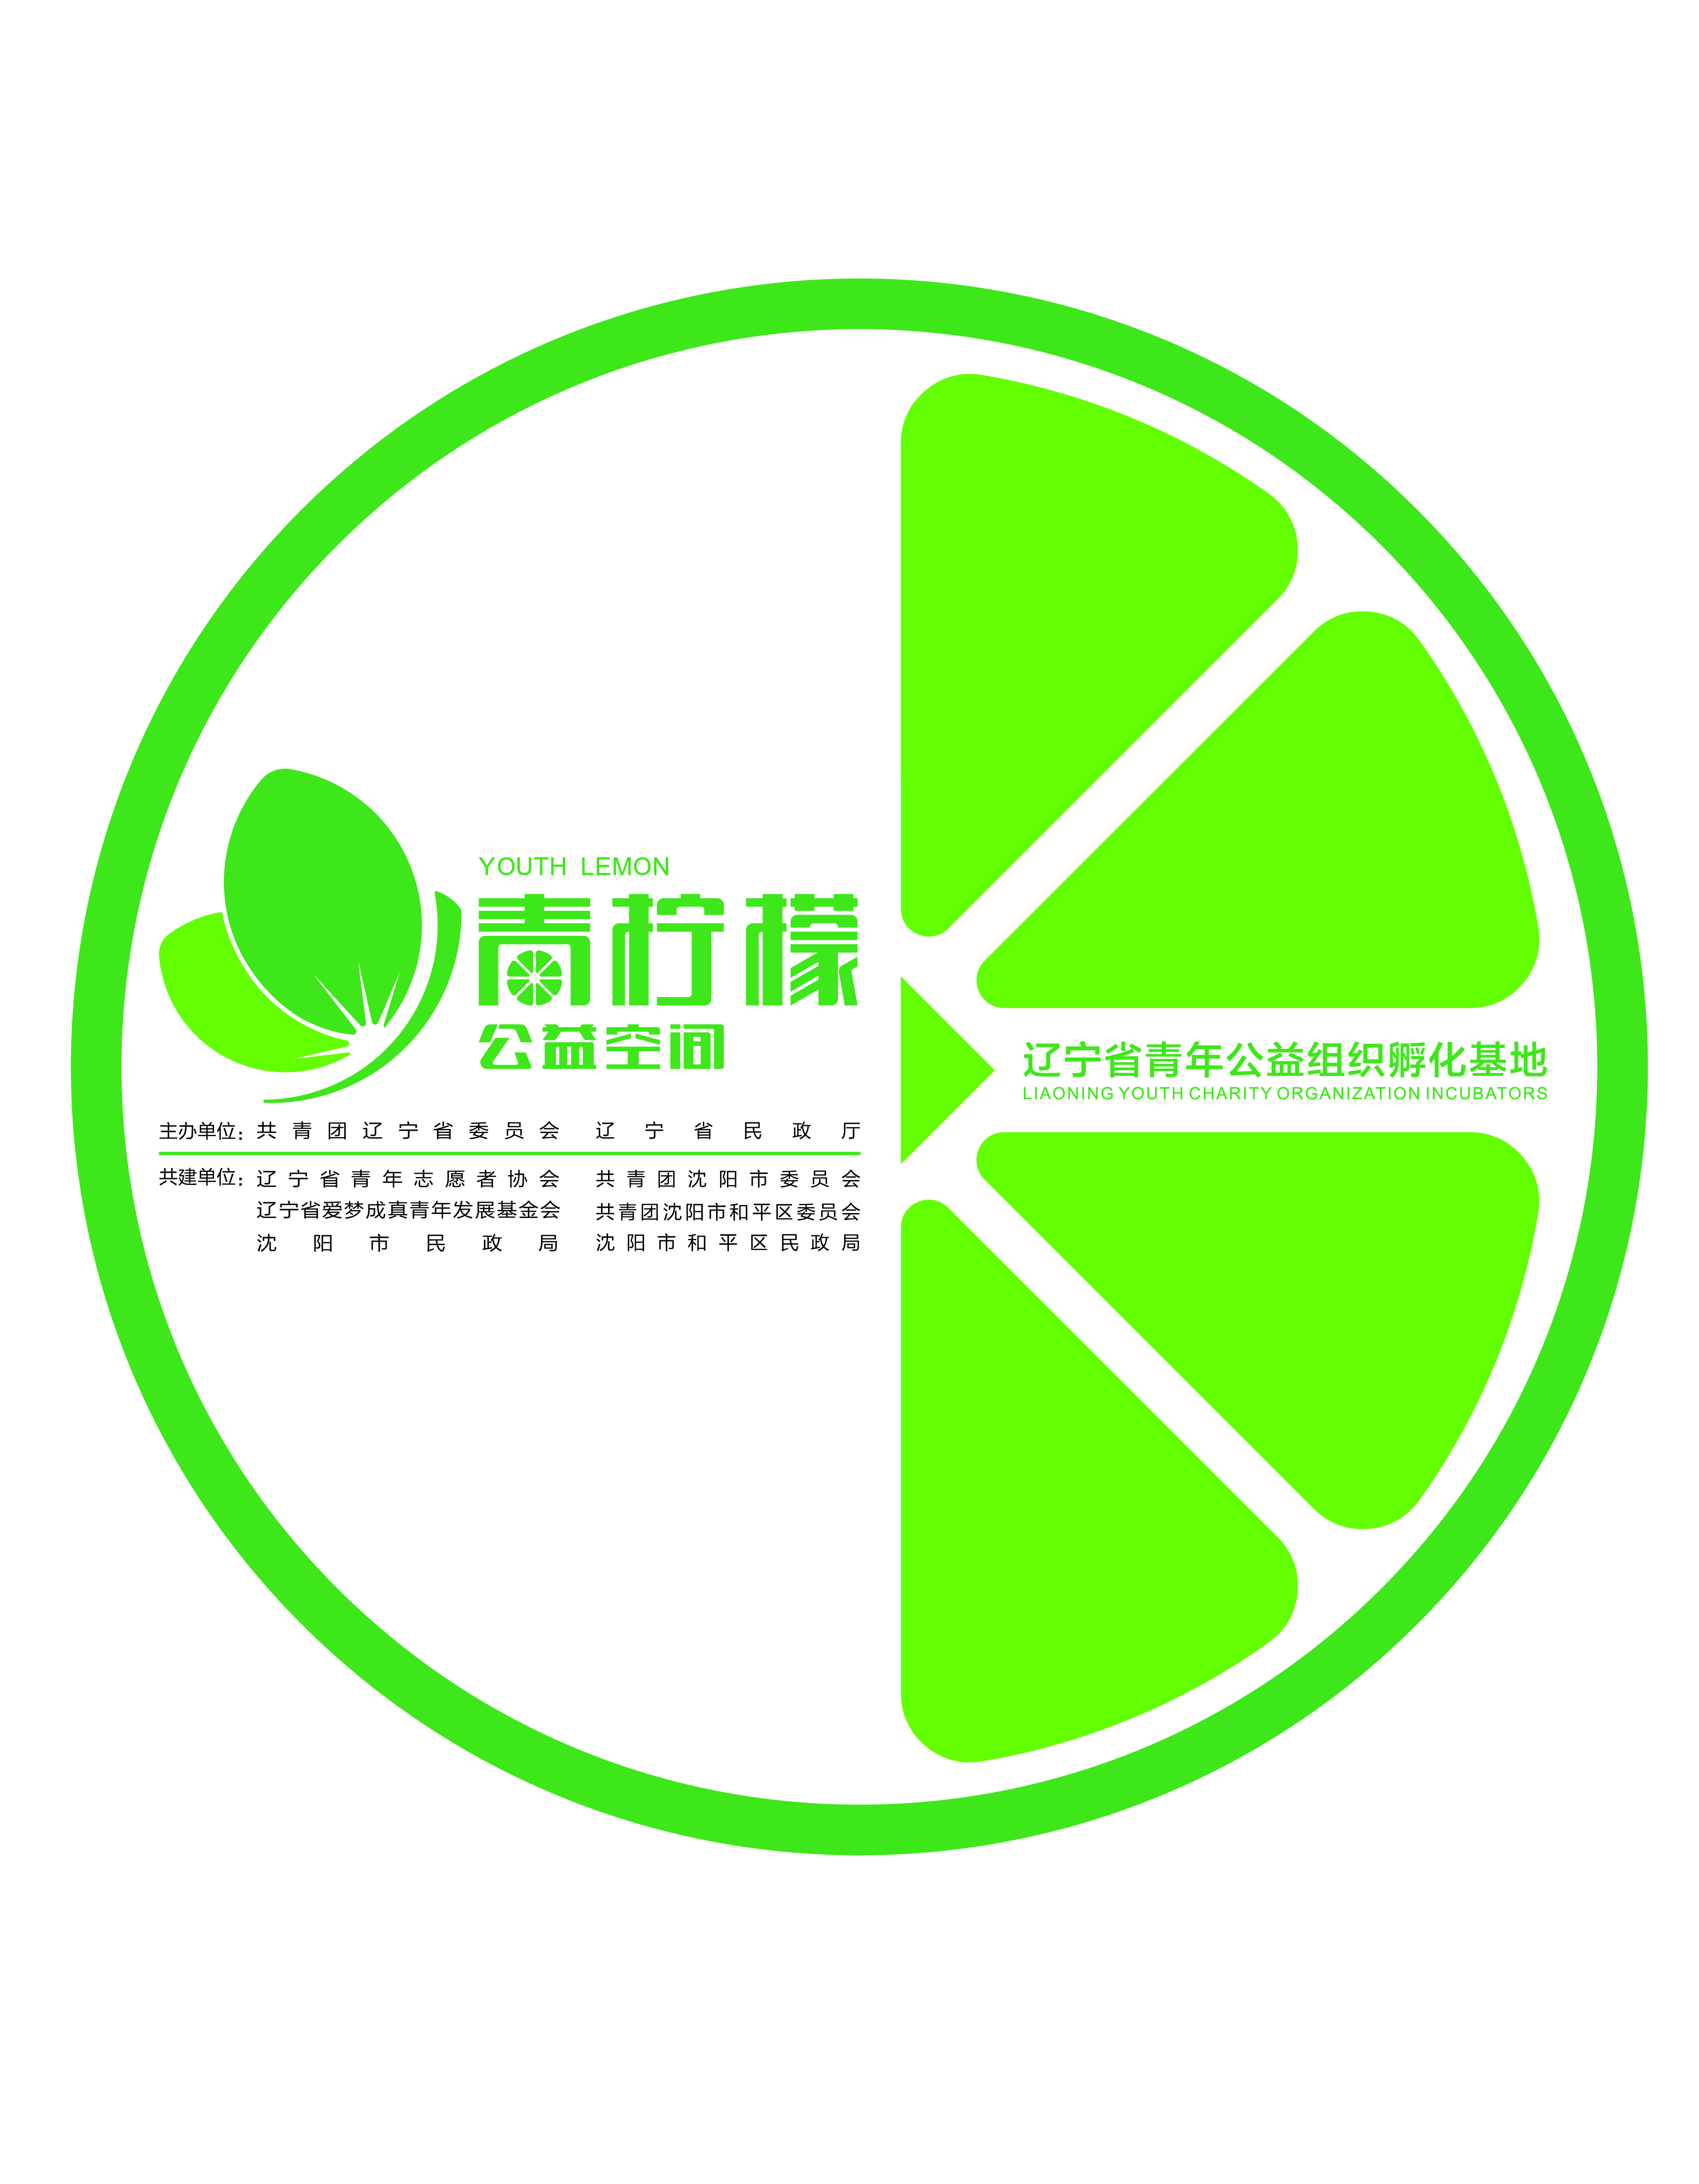 遼寧省青檸檬青年公益事業發展中心